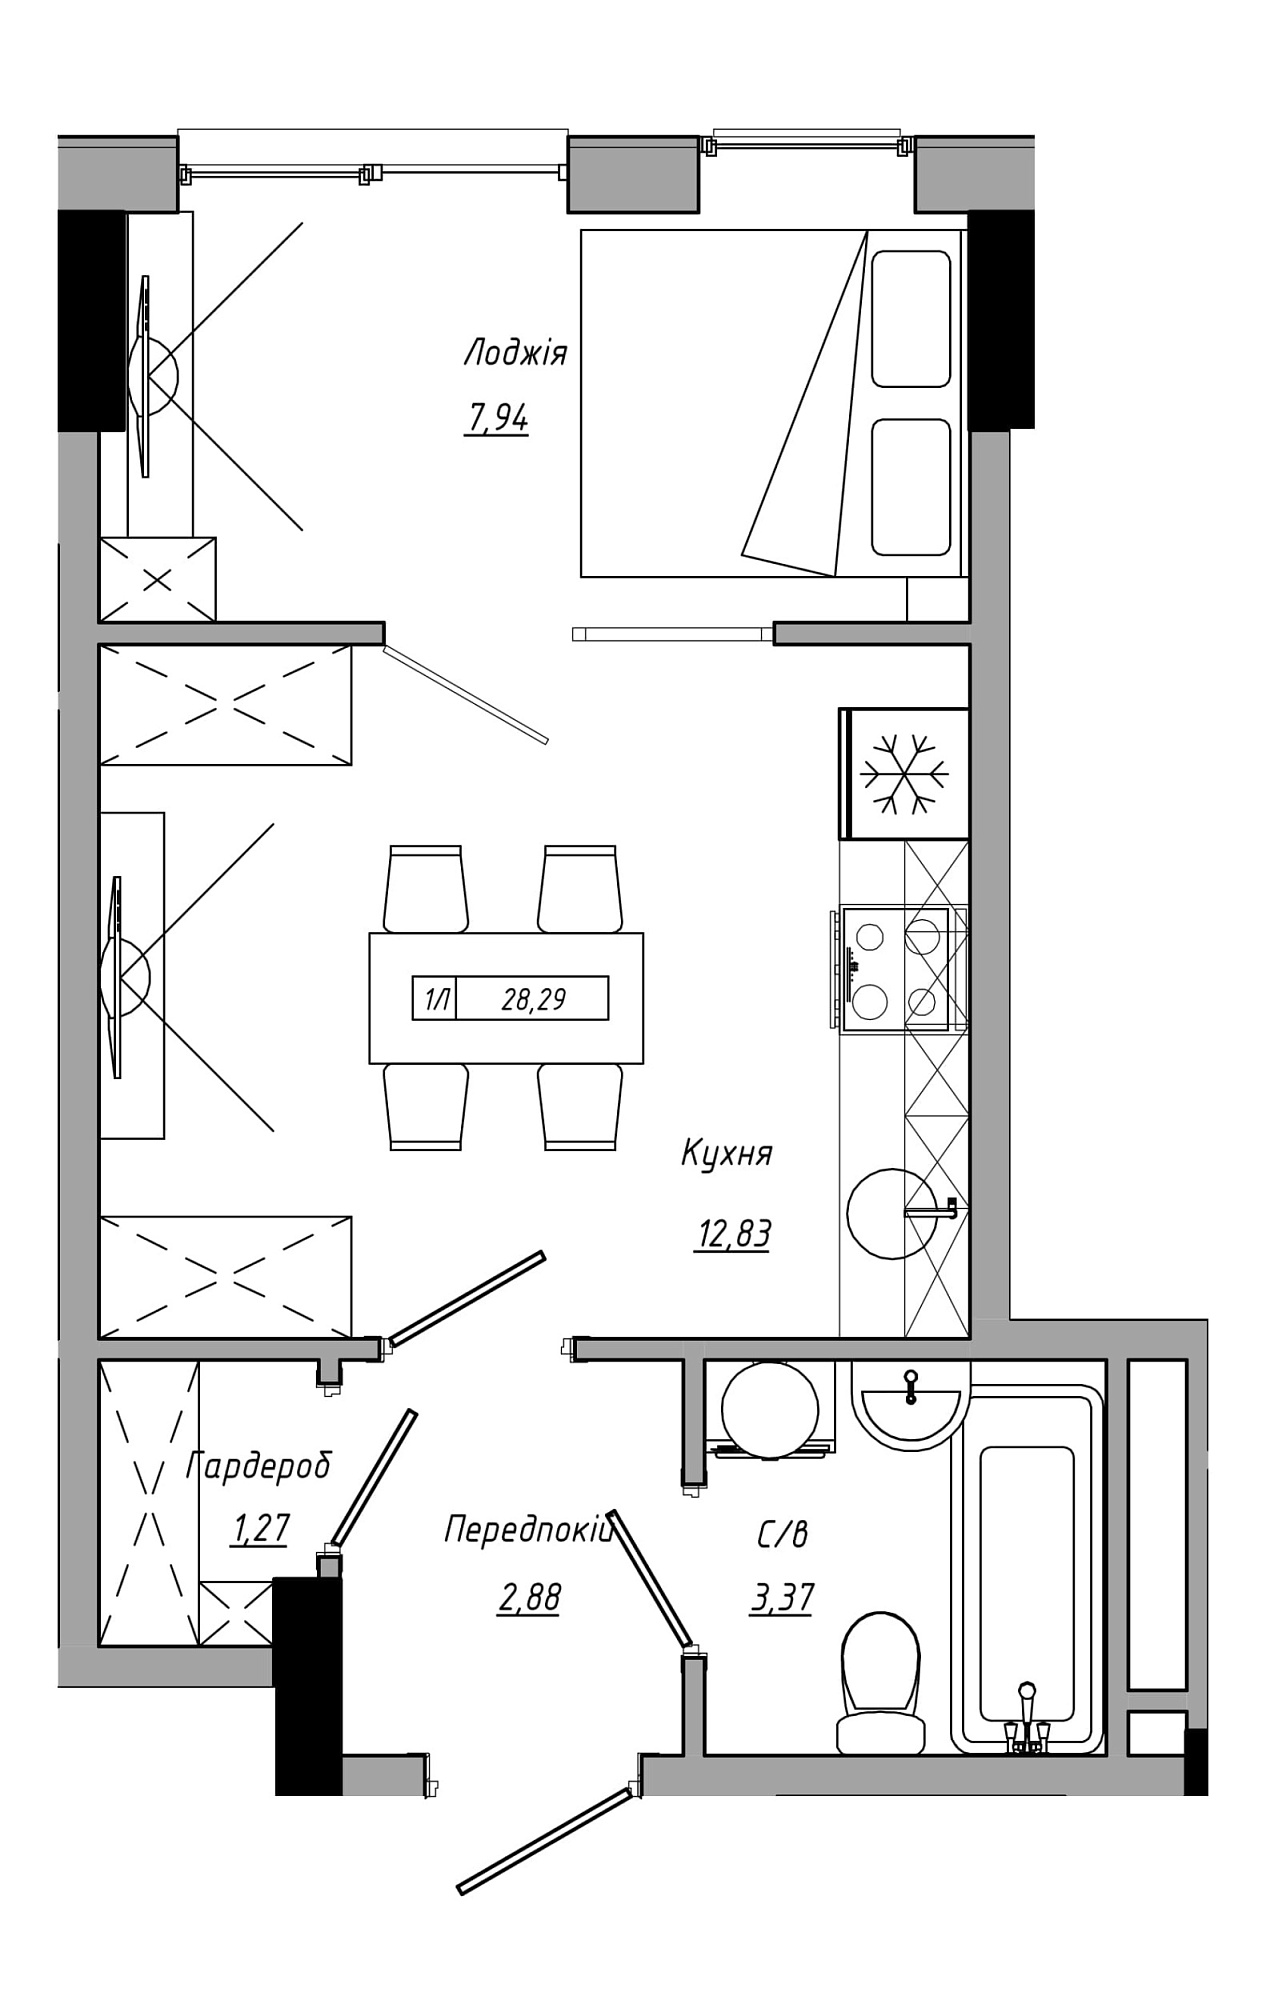 Планування 1-к квартира площею 28.29м2, AB-21-11/00014.